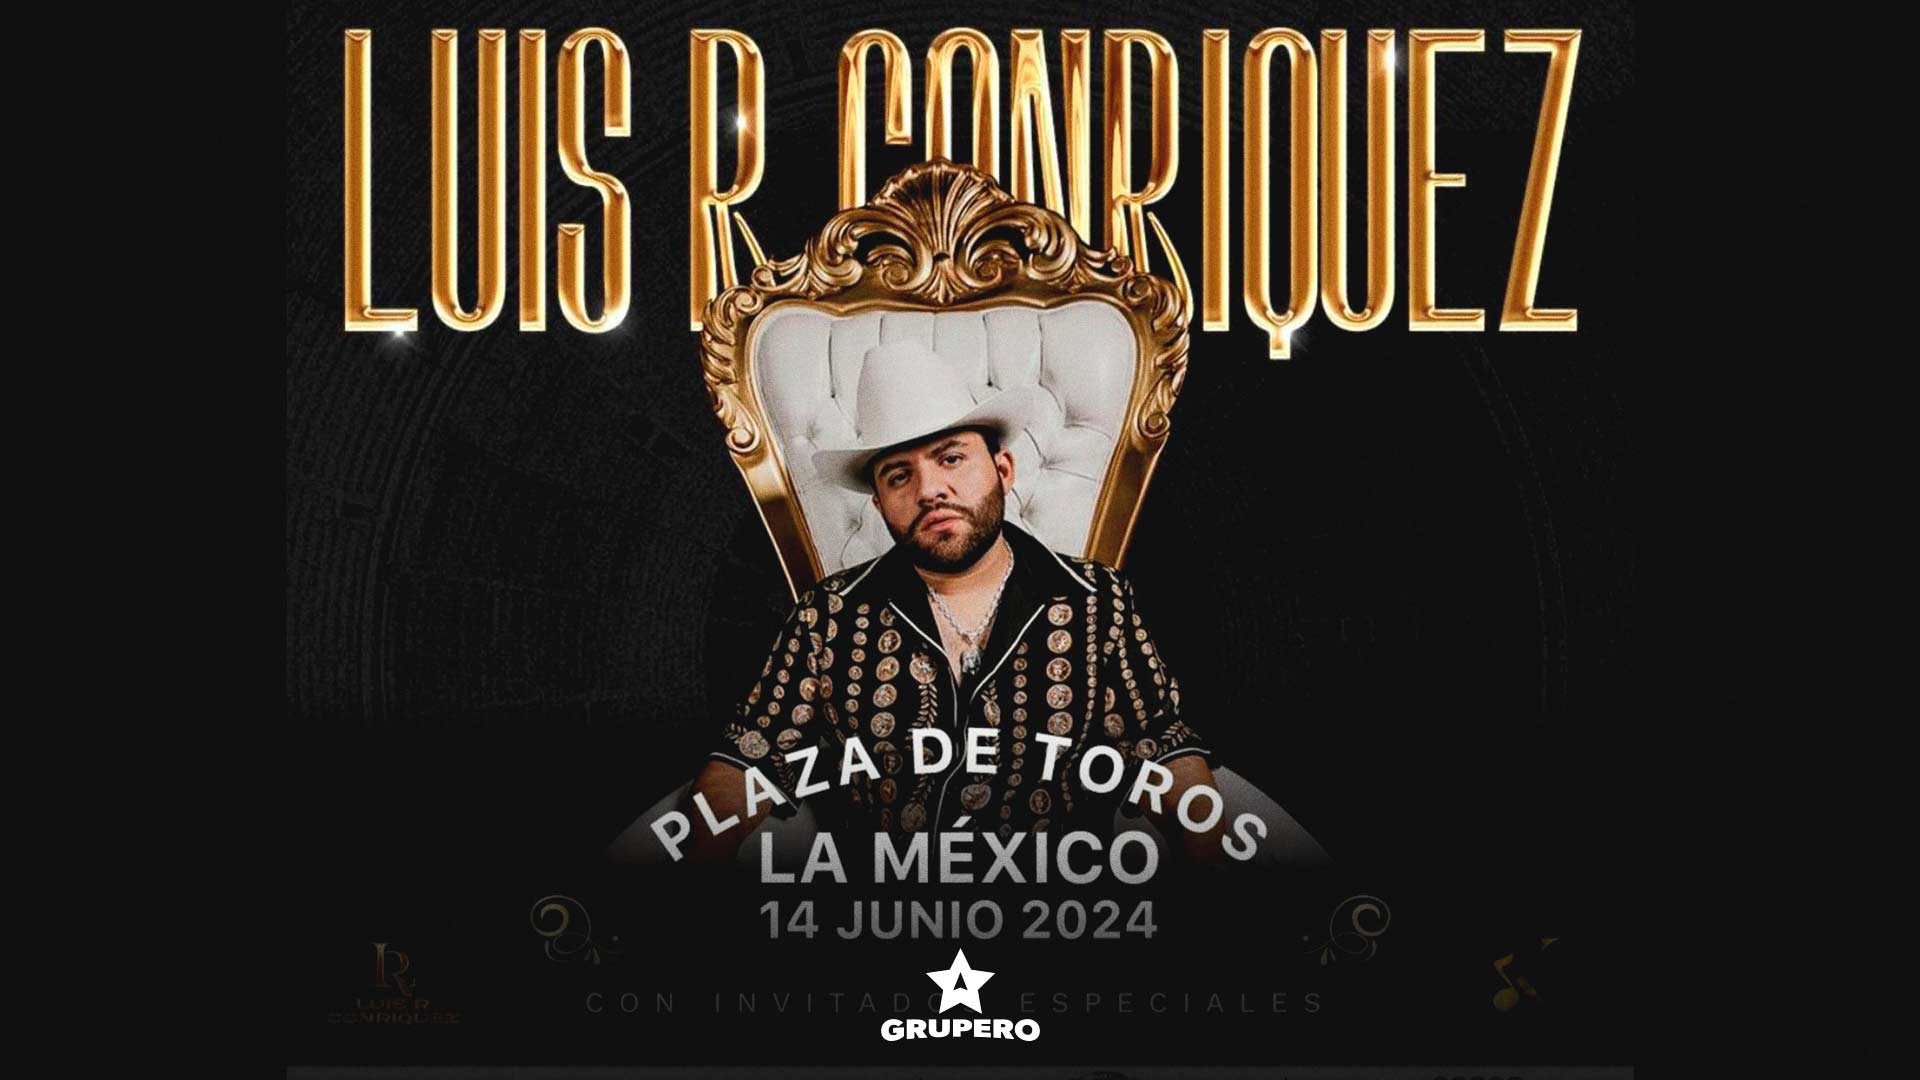 ¡Es oficial! Luis R Conriquez confirma show en la Plaza de Toros México